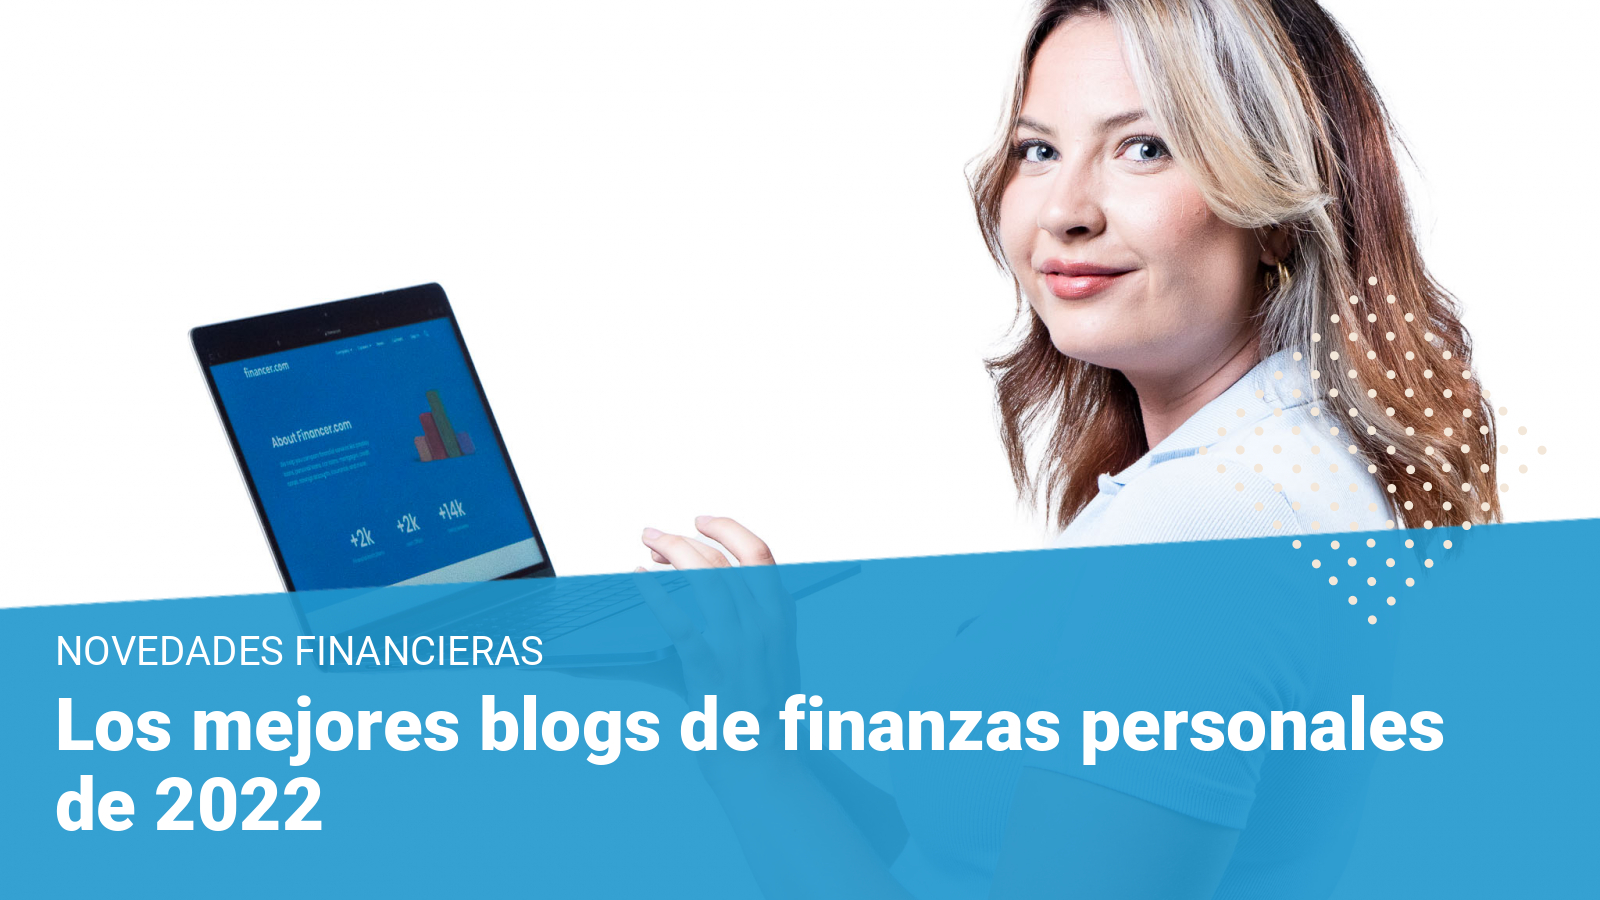 los mejores blogs de finanzas persoanles